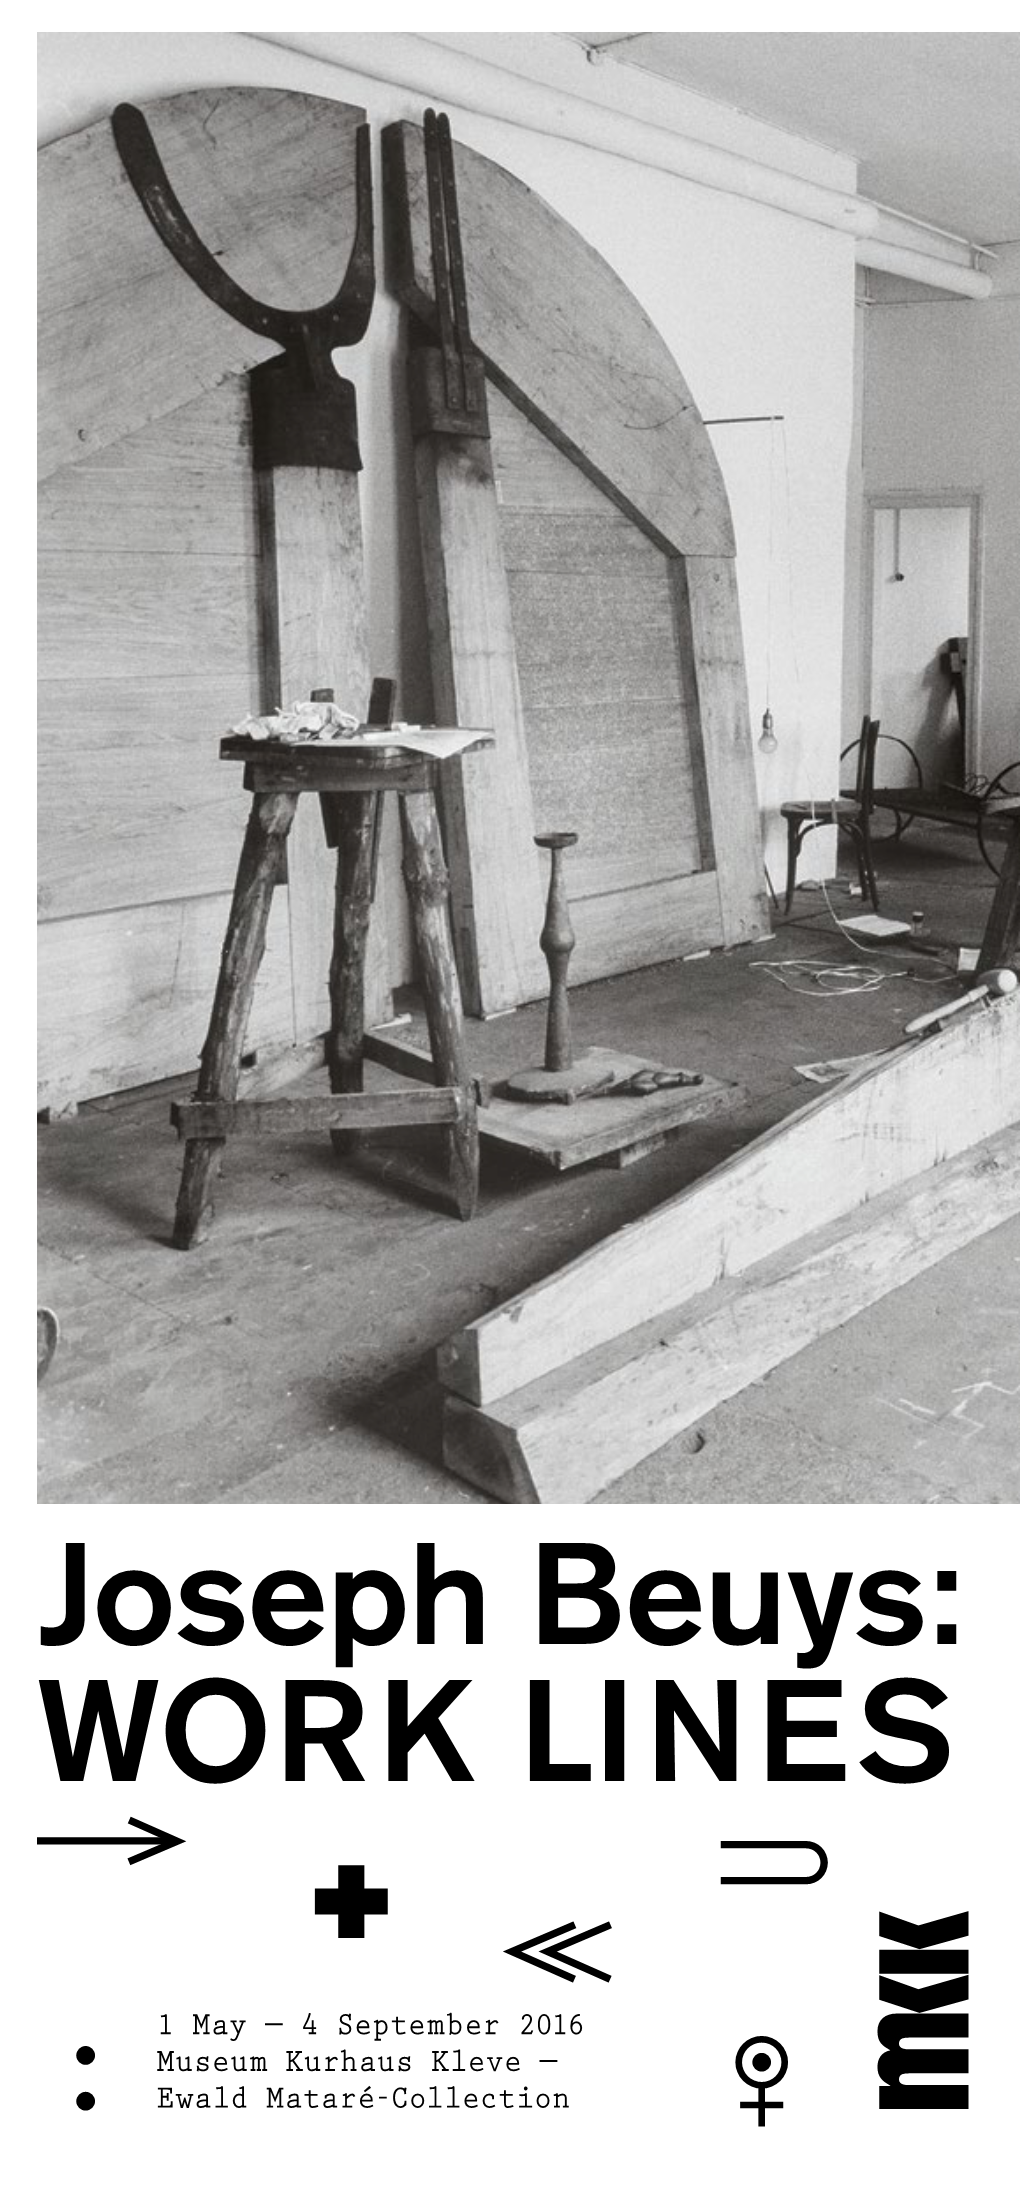 Joseph Beuys: WORK LINES